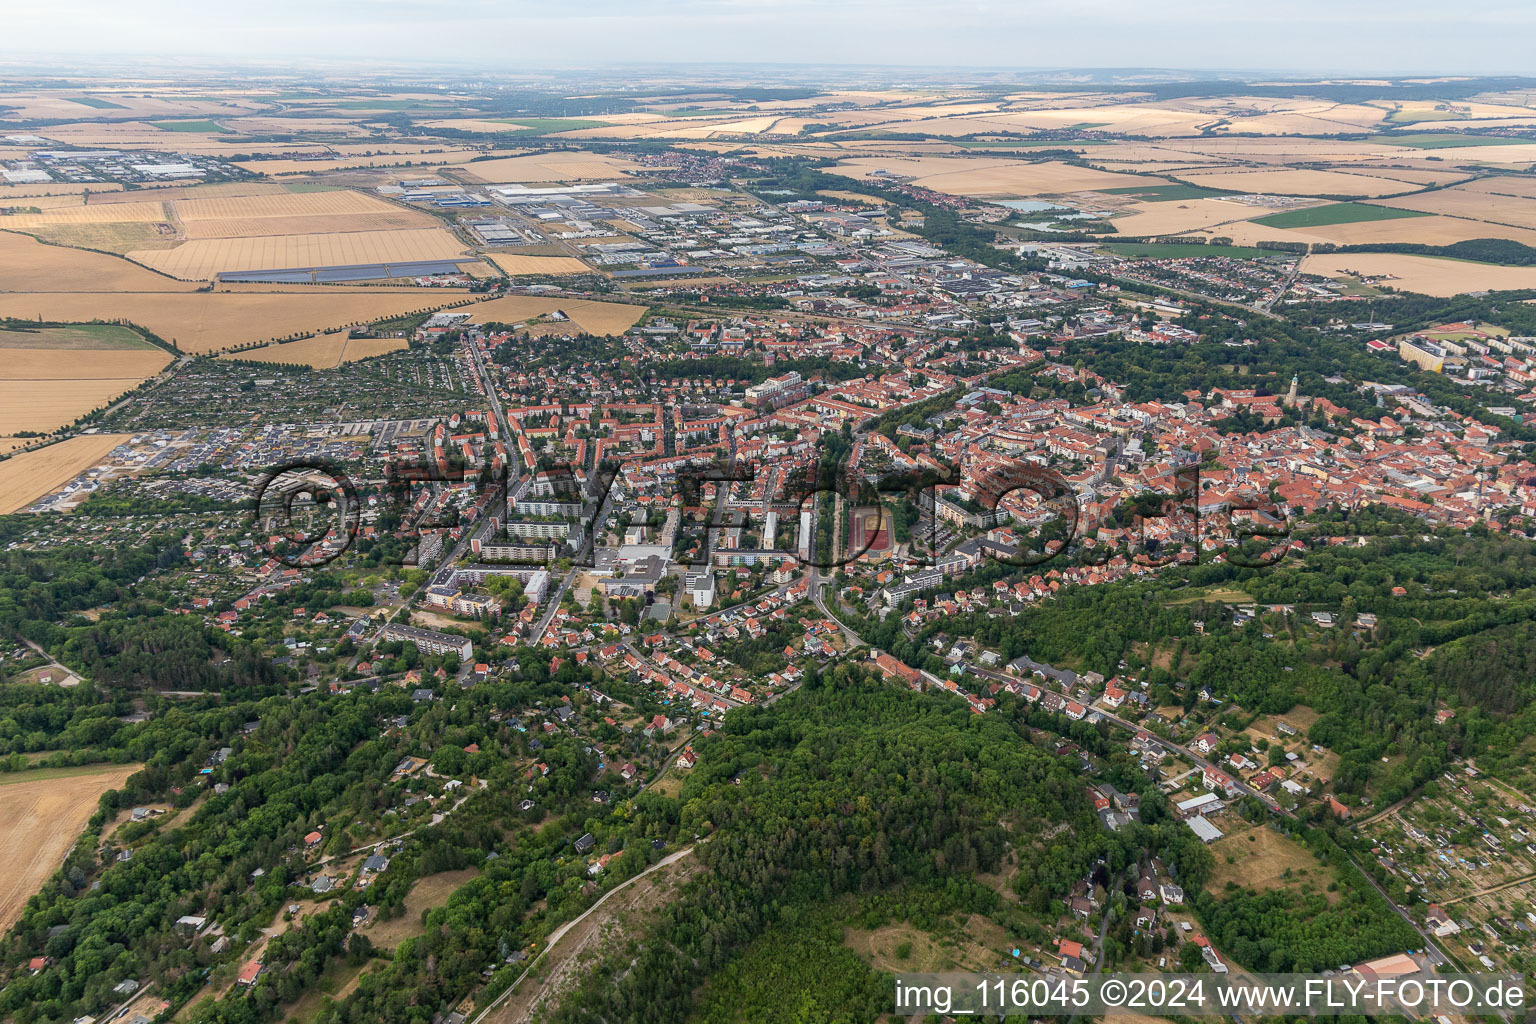 Vue aérienne de Zone urbaine avec périphérie et centre-ville à Arnstadt dans le département Thuringe, Allemagne